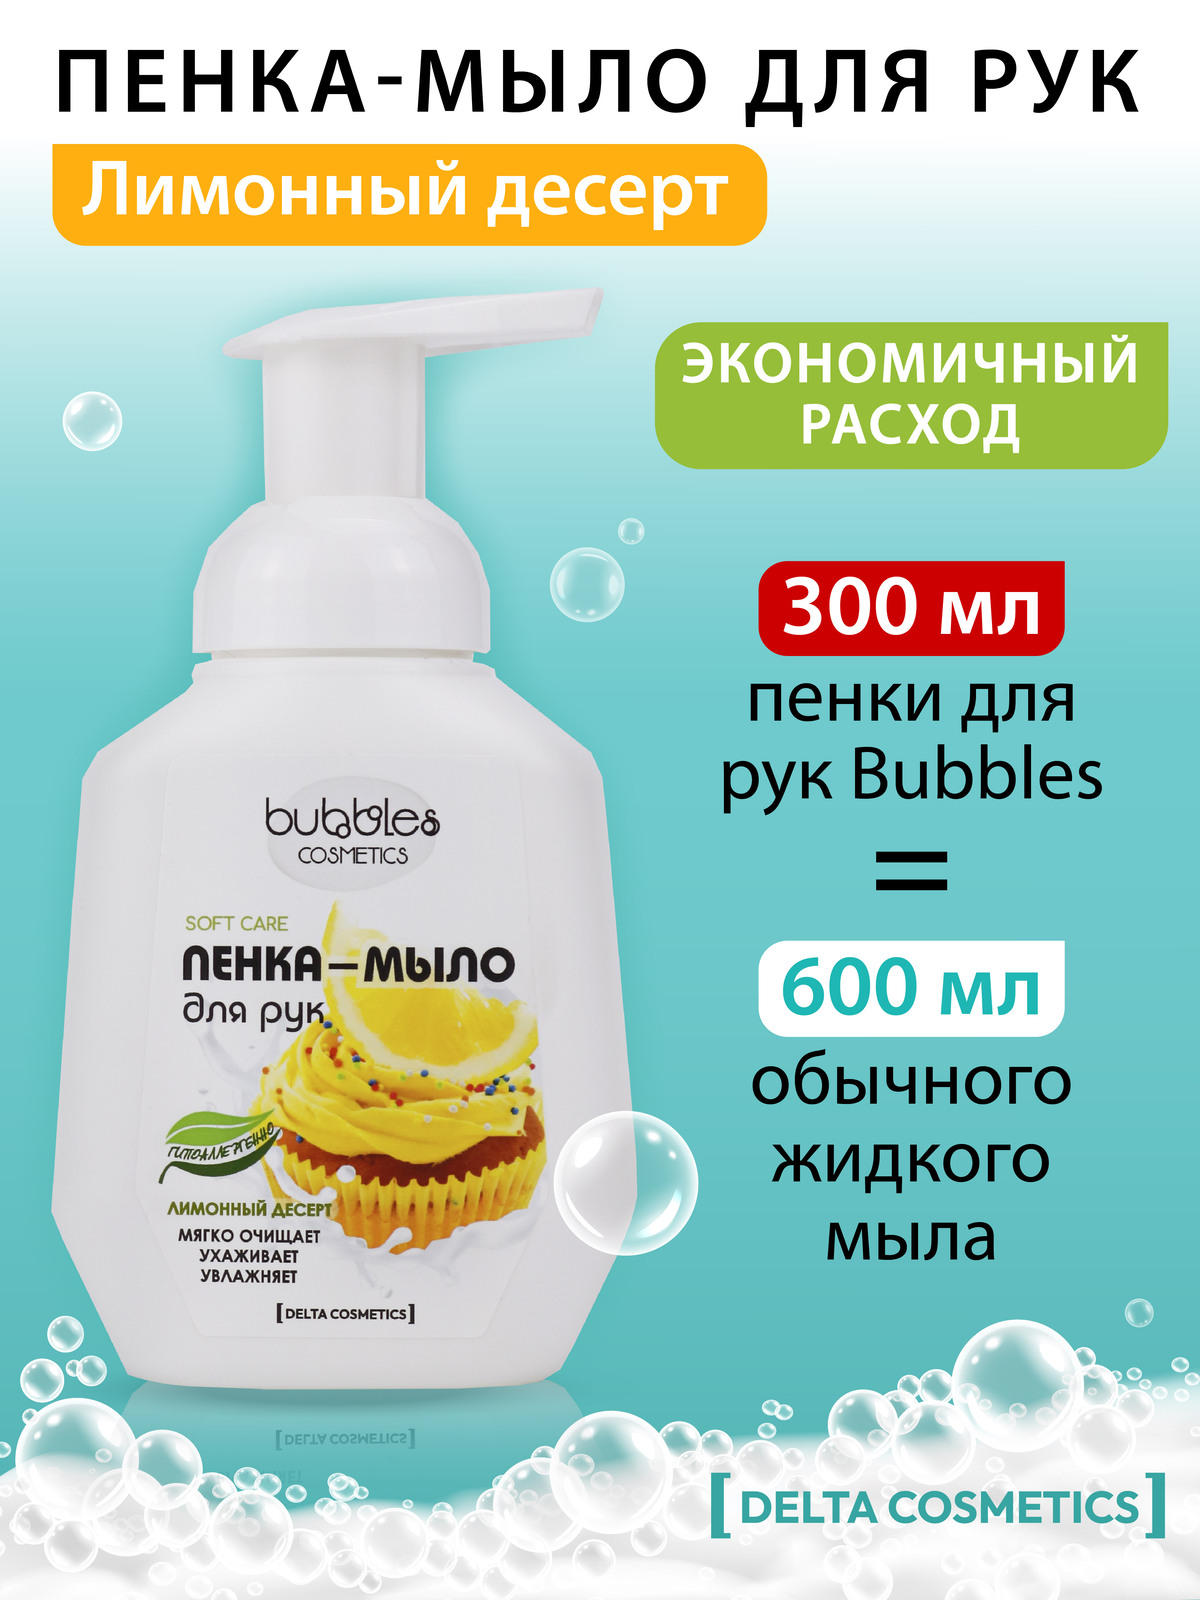 Пенка-мыло для рук Bubbles DELTA COSMETICS Лимонный десерт 300 мл - фото 3